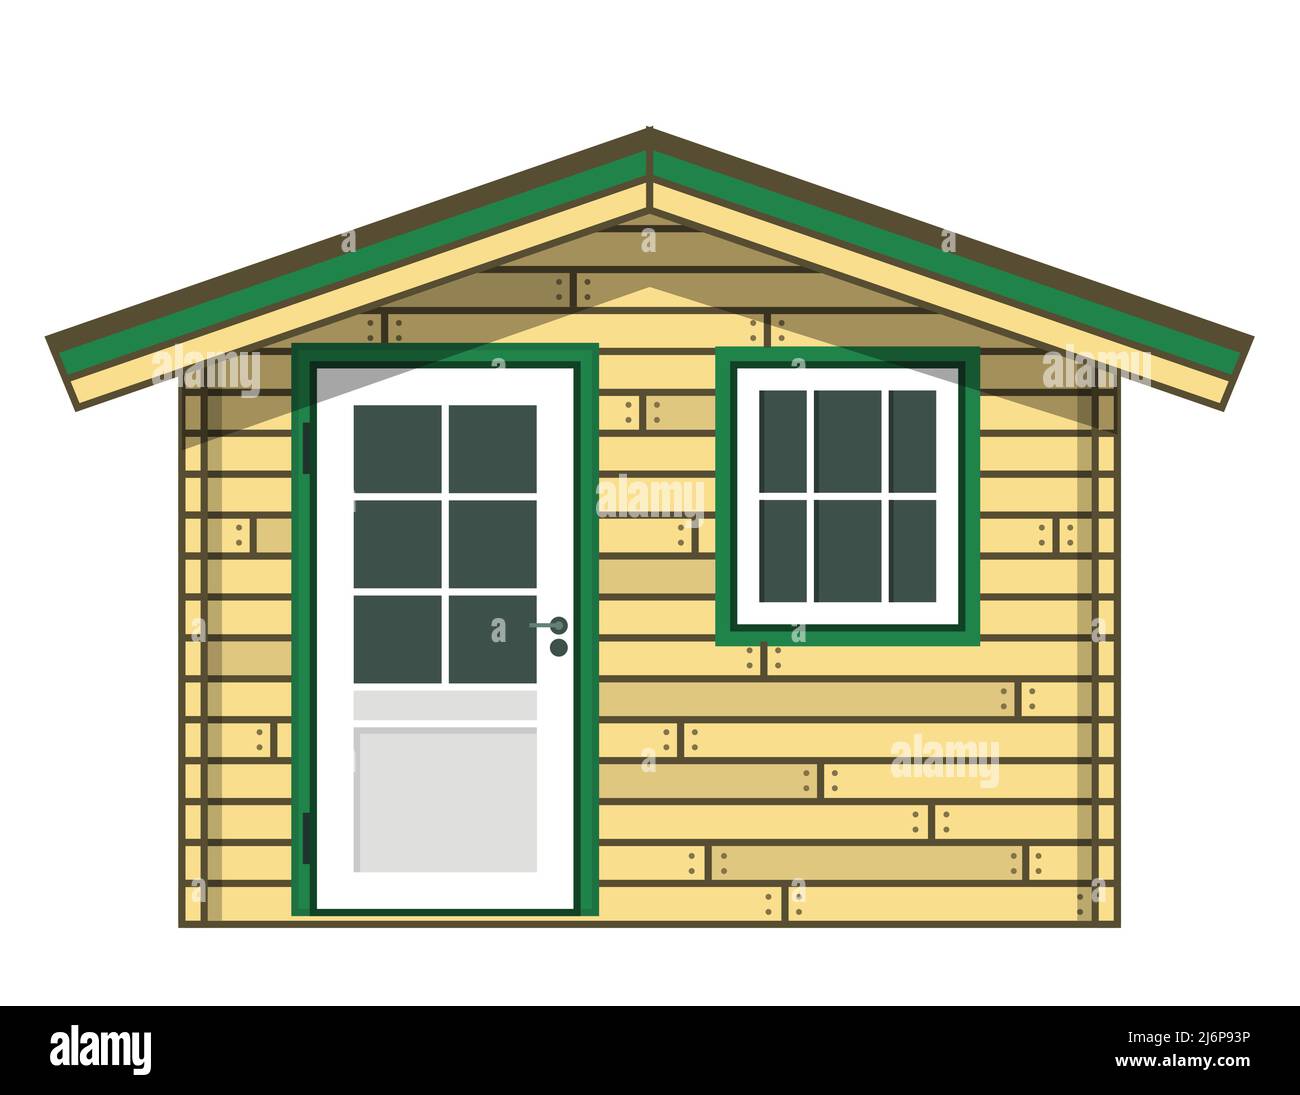 Petite maison de jardin boarée, petite hovelle en bois, façade de cabine de jardinage en planche, vecteur Illustration de Vecteur